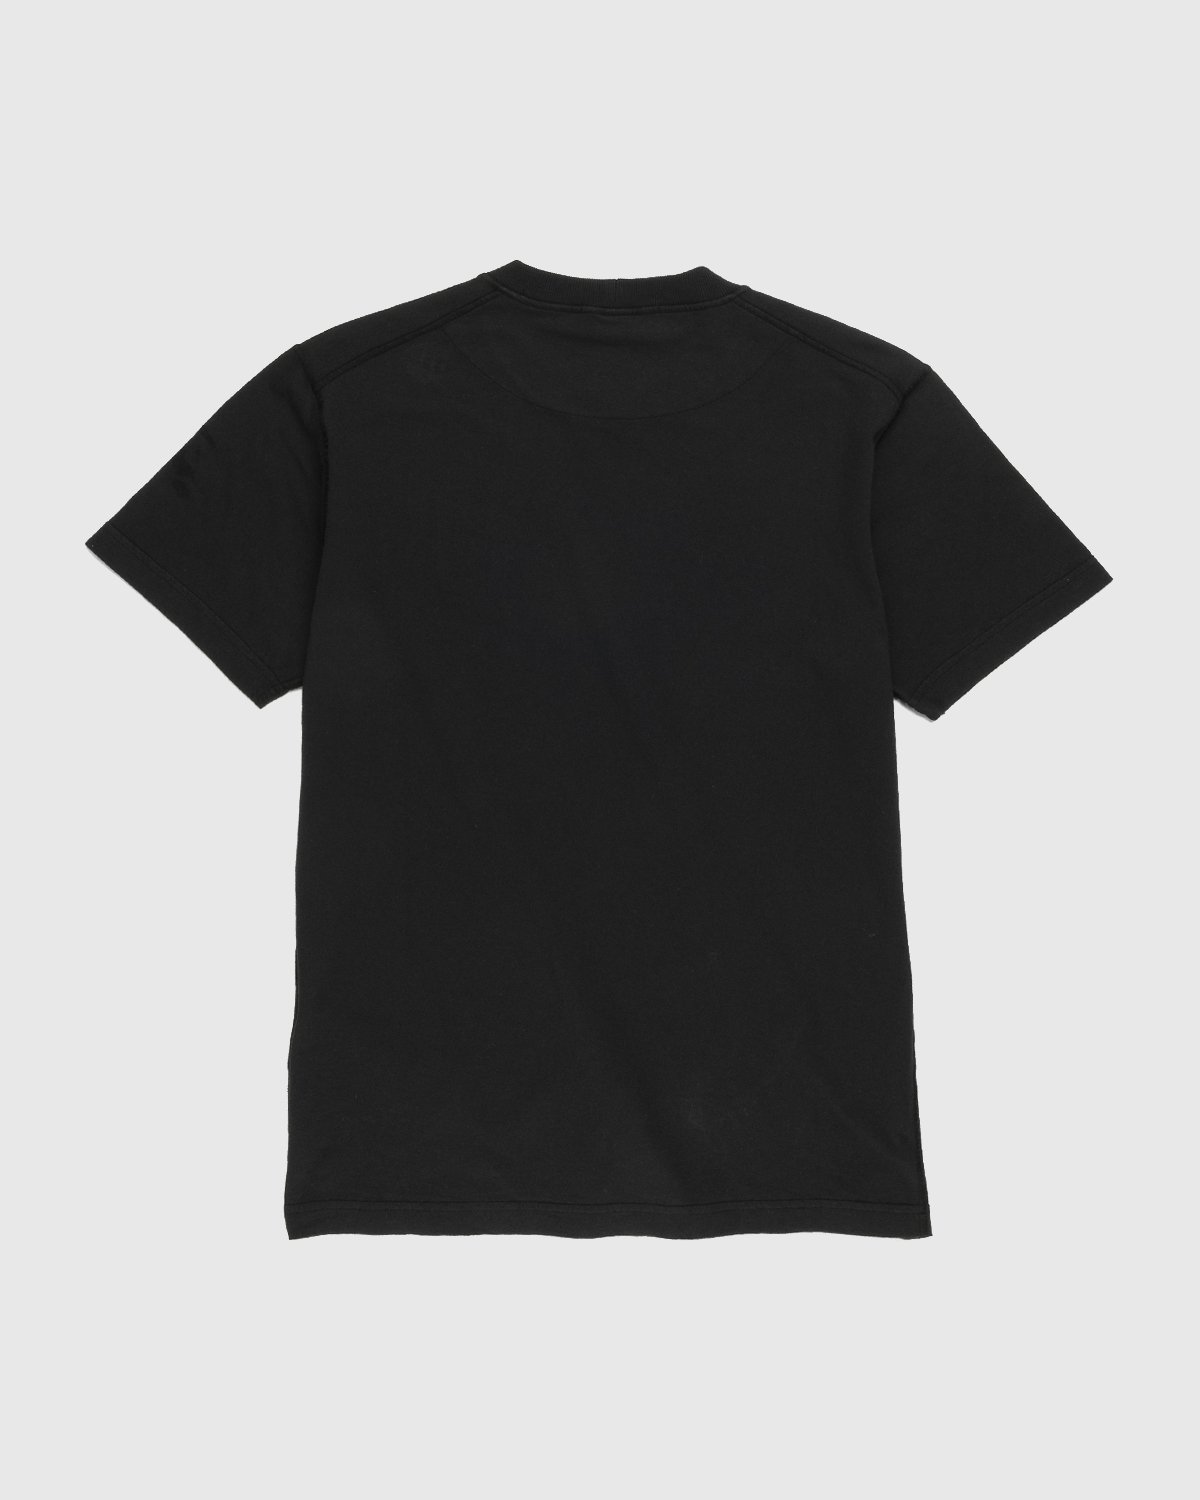 Stone Island - 23757 Garment-Dyed Fissato T-Shirt Black - Clothing - Black - Image 2